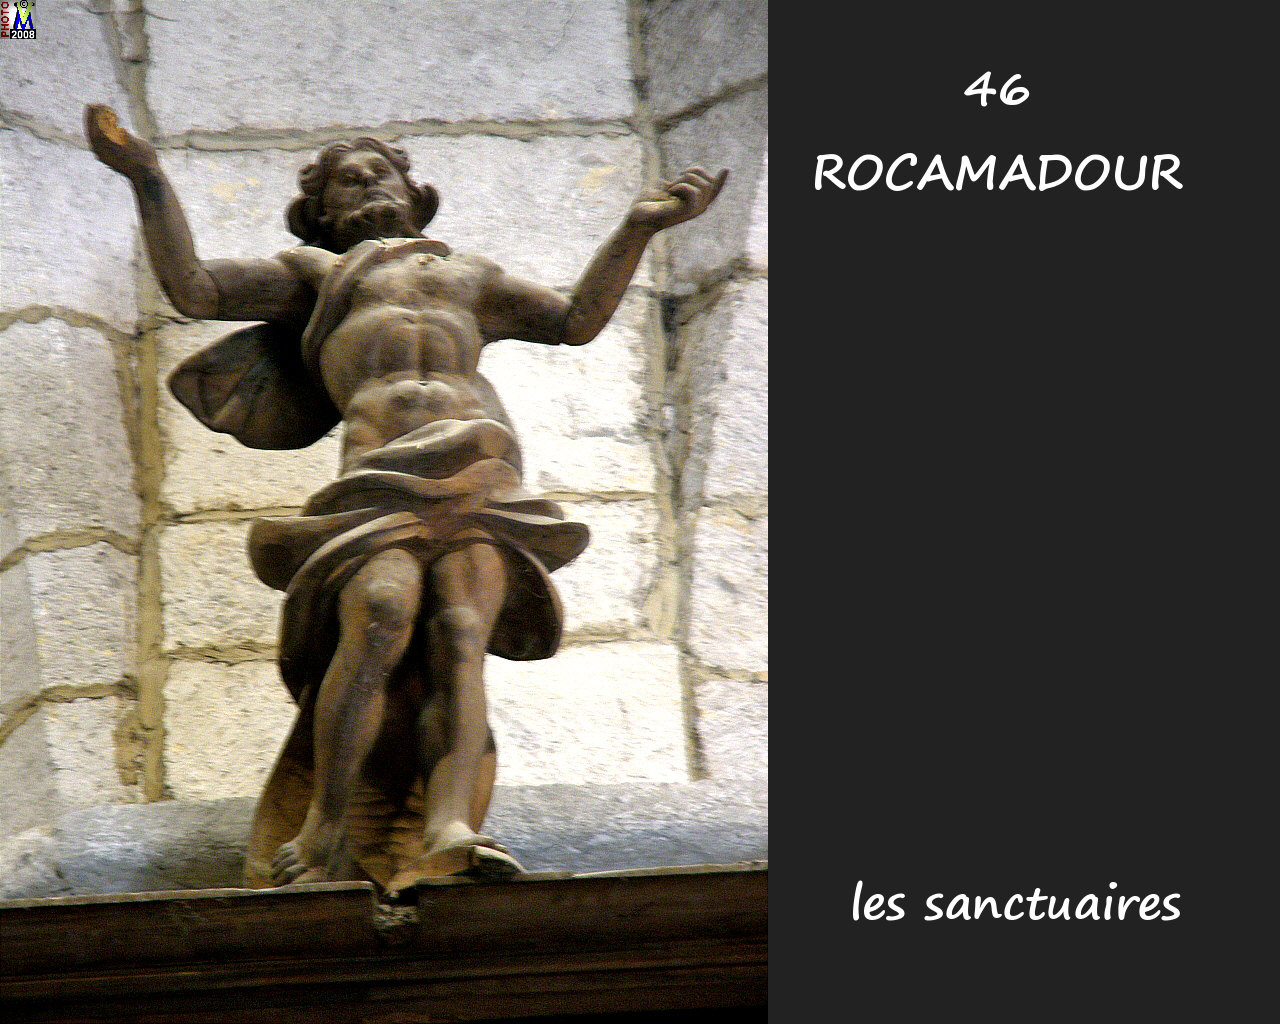 46ROCAMADOUR_sanctuaires_704.jpg